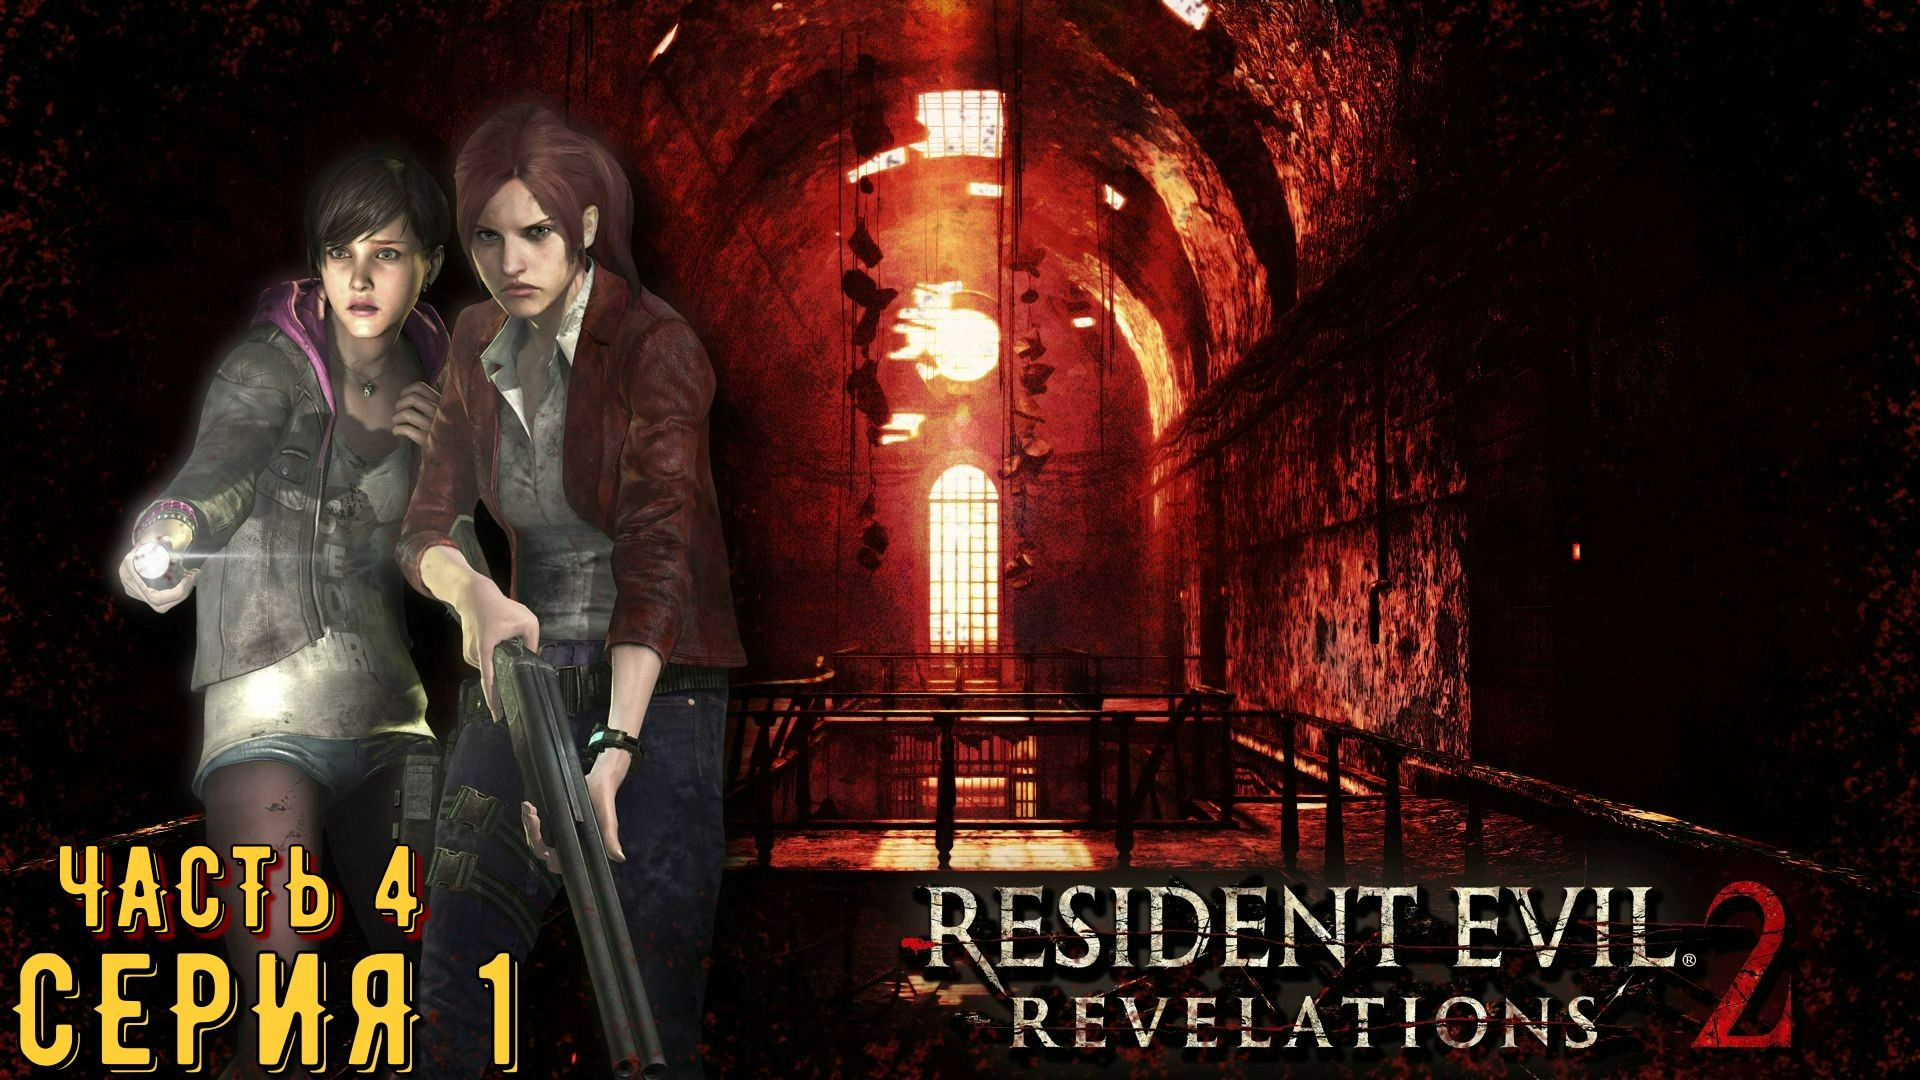 Resident Evil Revelations 2 / Biohazard Revelations 2 ► Серия 1 Часть 4 ◄ | Запись стрима